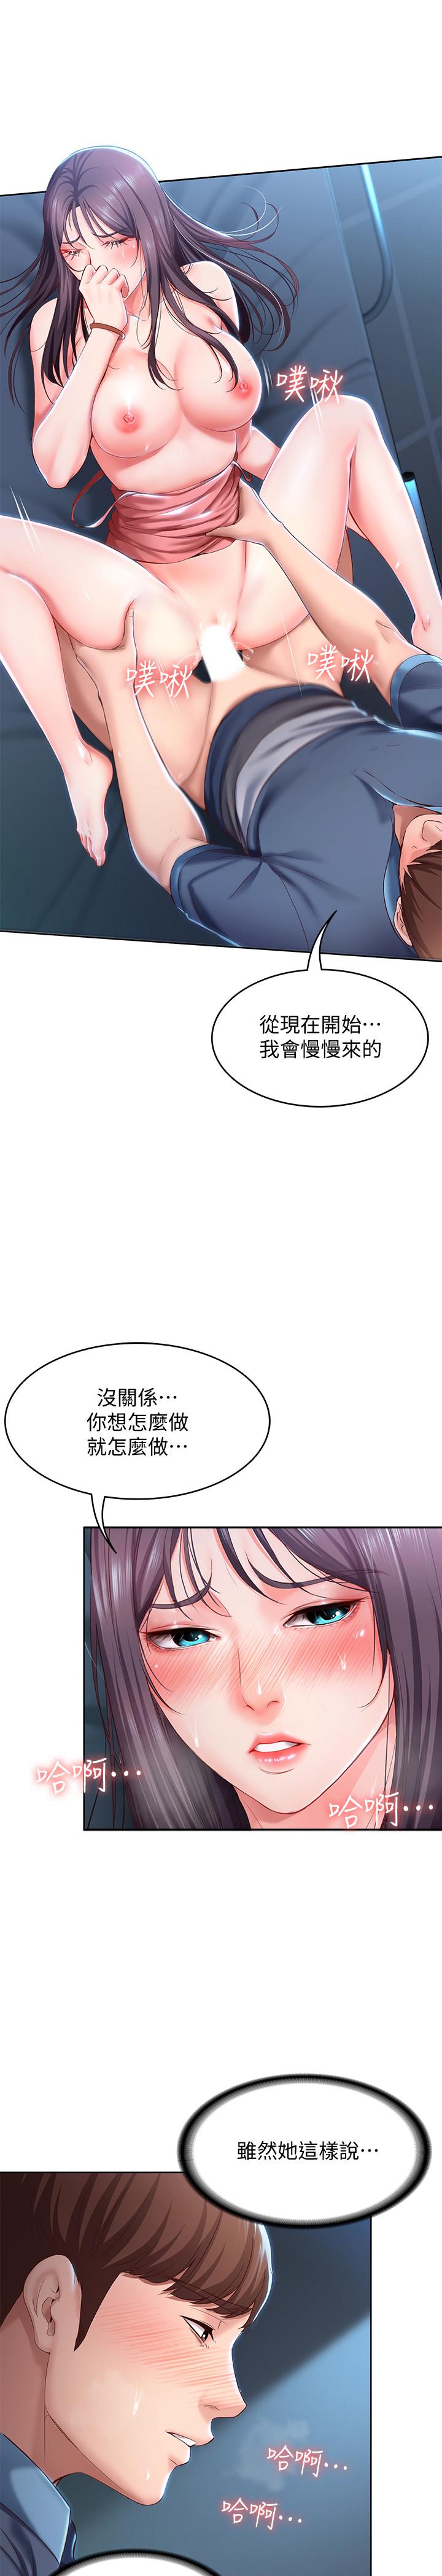 韩国污漫画 寄宿日記 第25话-淫荡表情 11